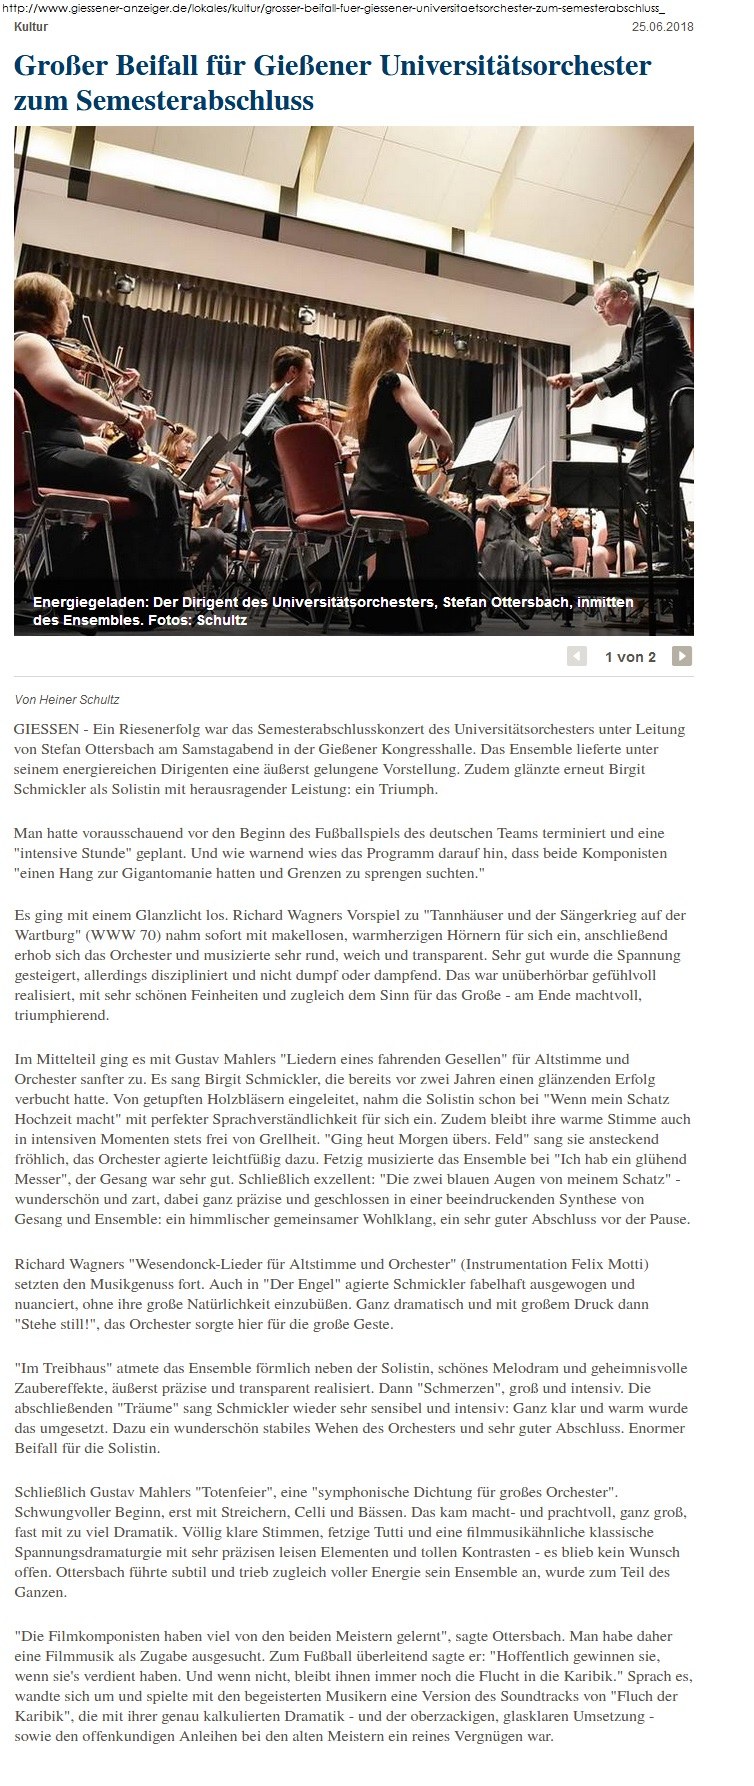 Konzert Sommersemester 2018 Gießener Anzeiger.jpg